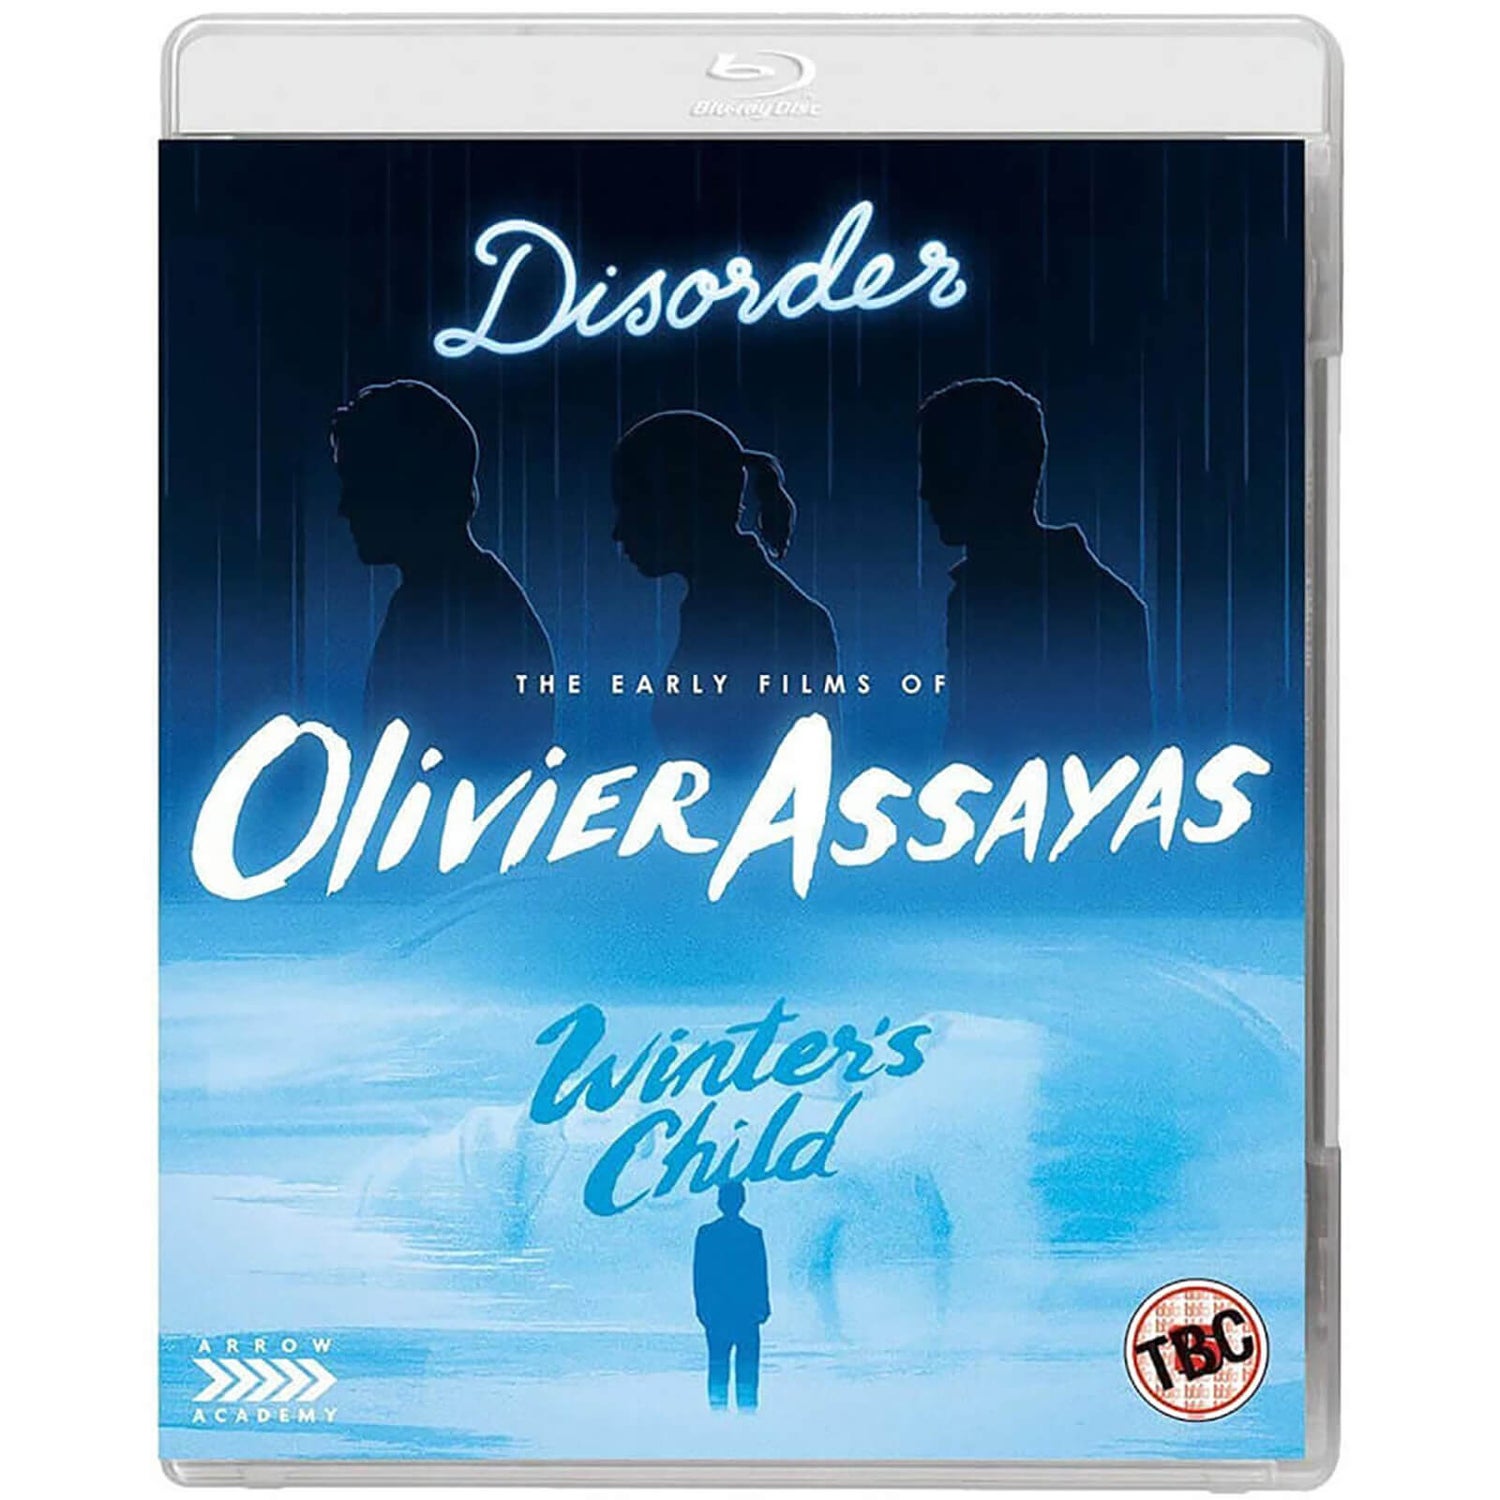 Les premiers films d'Olivier Assayas (Désordre, L'Enfant de l'hiver)